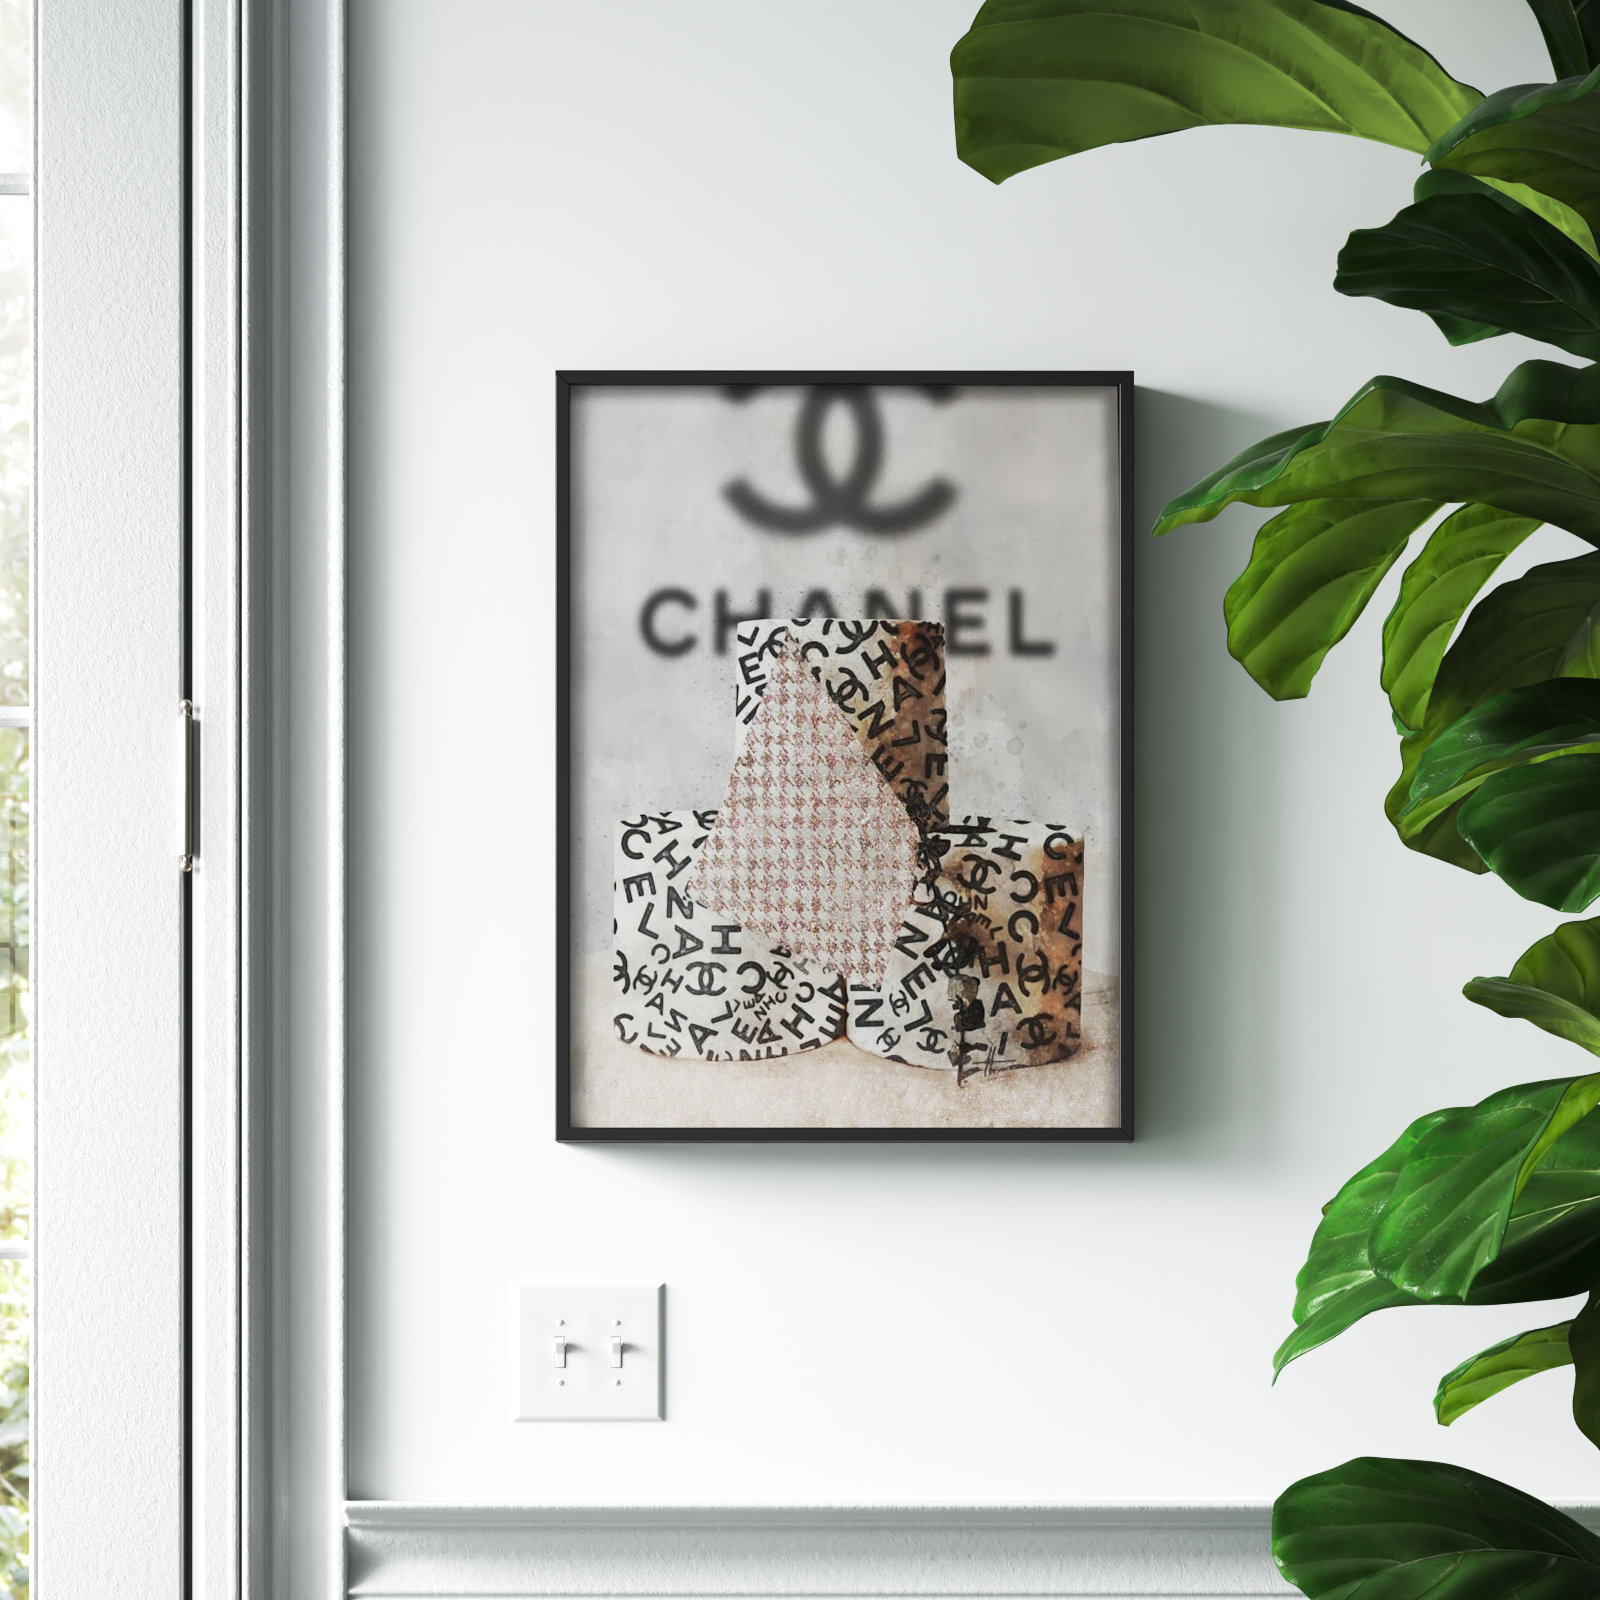 Cusom Coffee Table Book Stack, Coco Chanel Quote, Fashion Designer